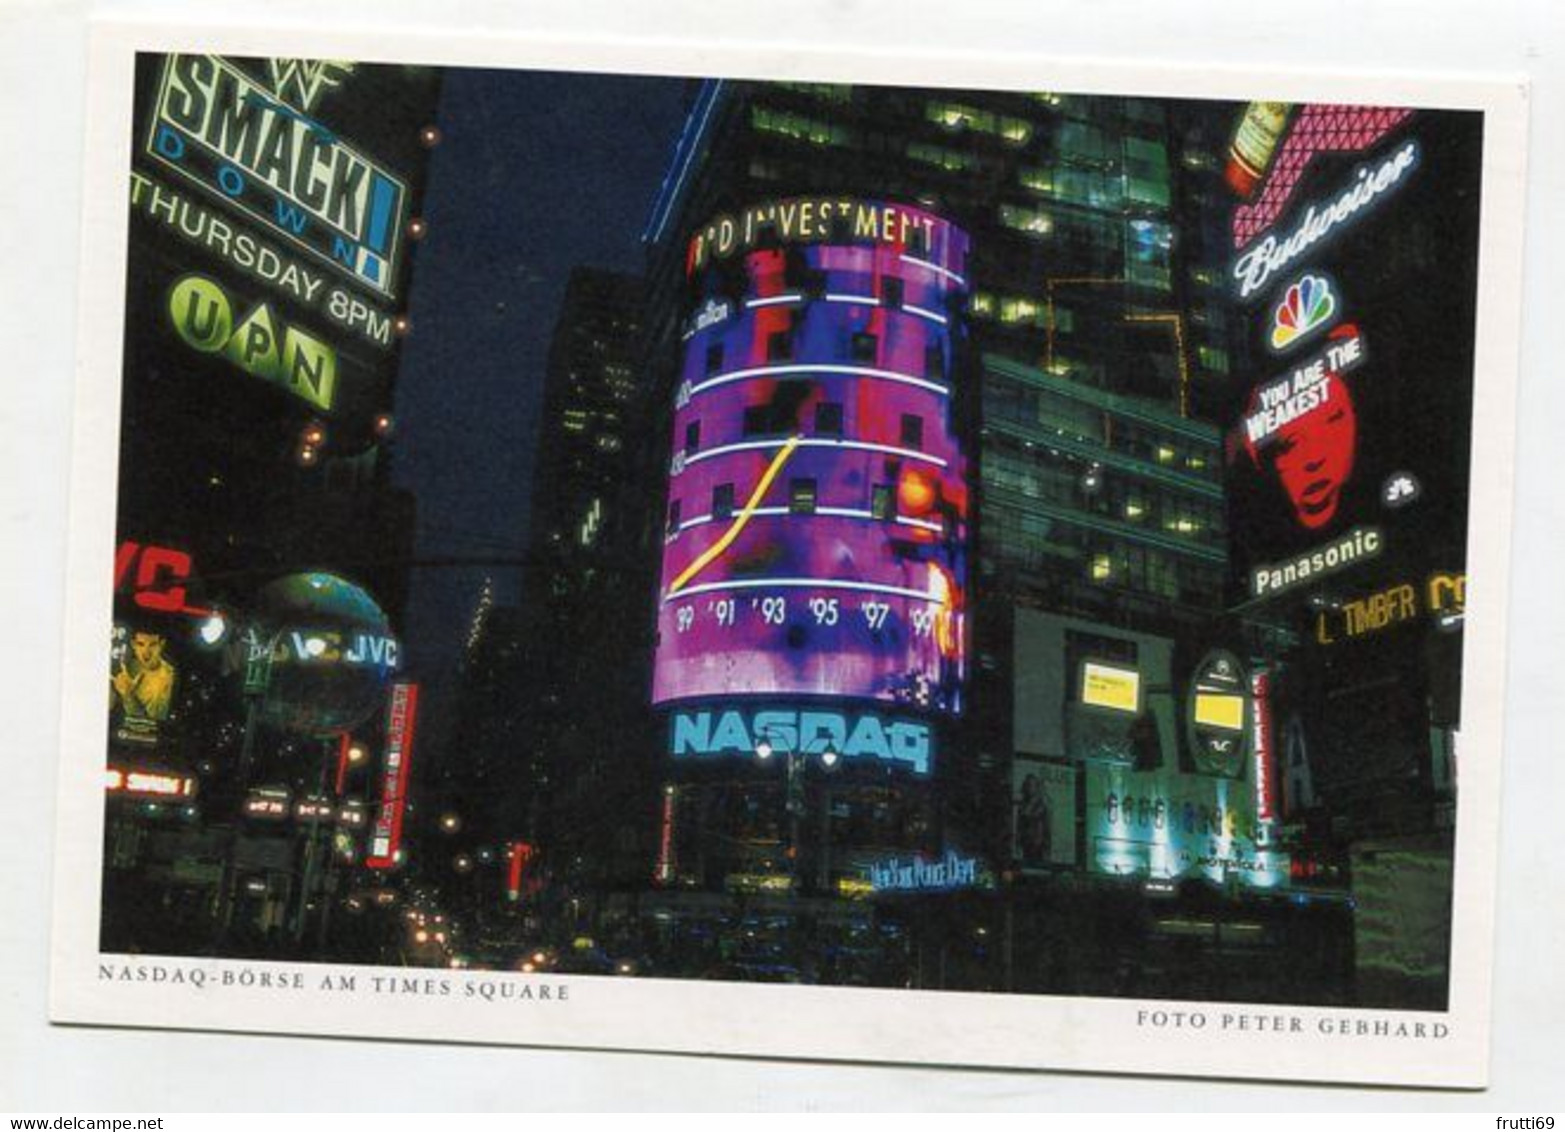 AK 074669 USA - New York City - NASDAQ-Börse Am Times Square - Time Square